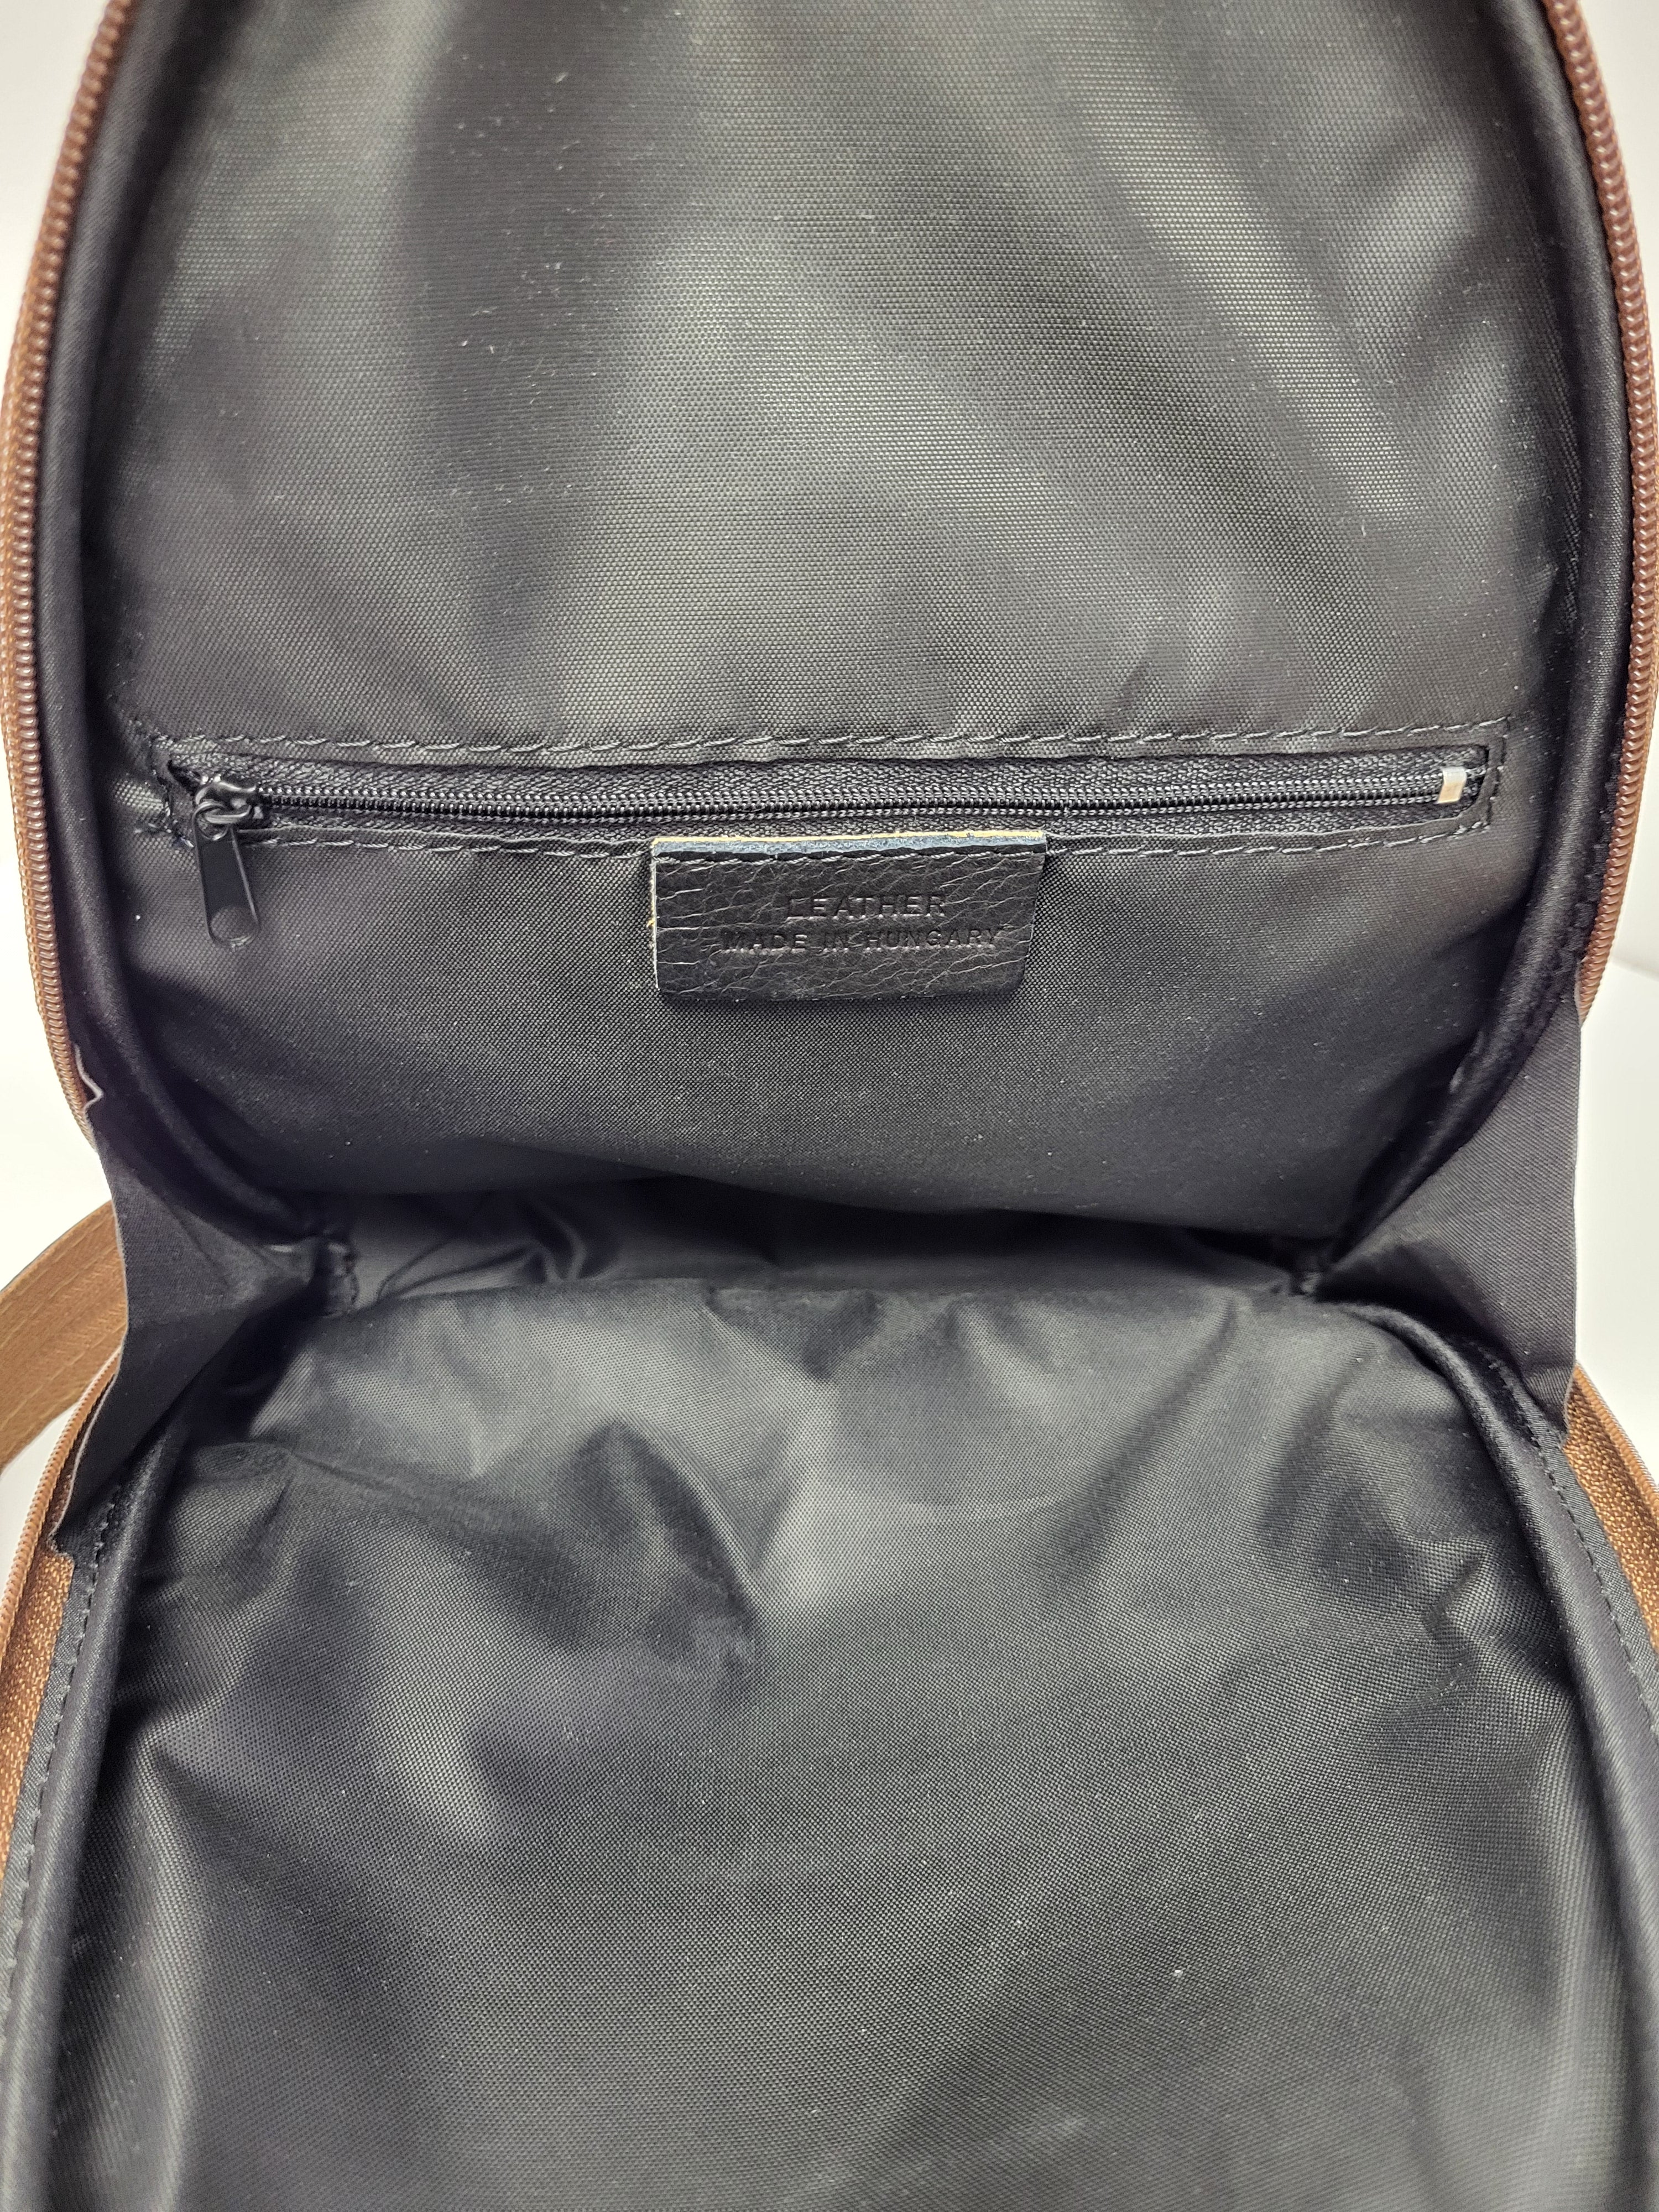 Brown European Leather Shoulder/Backpack